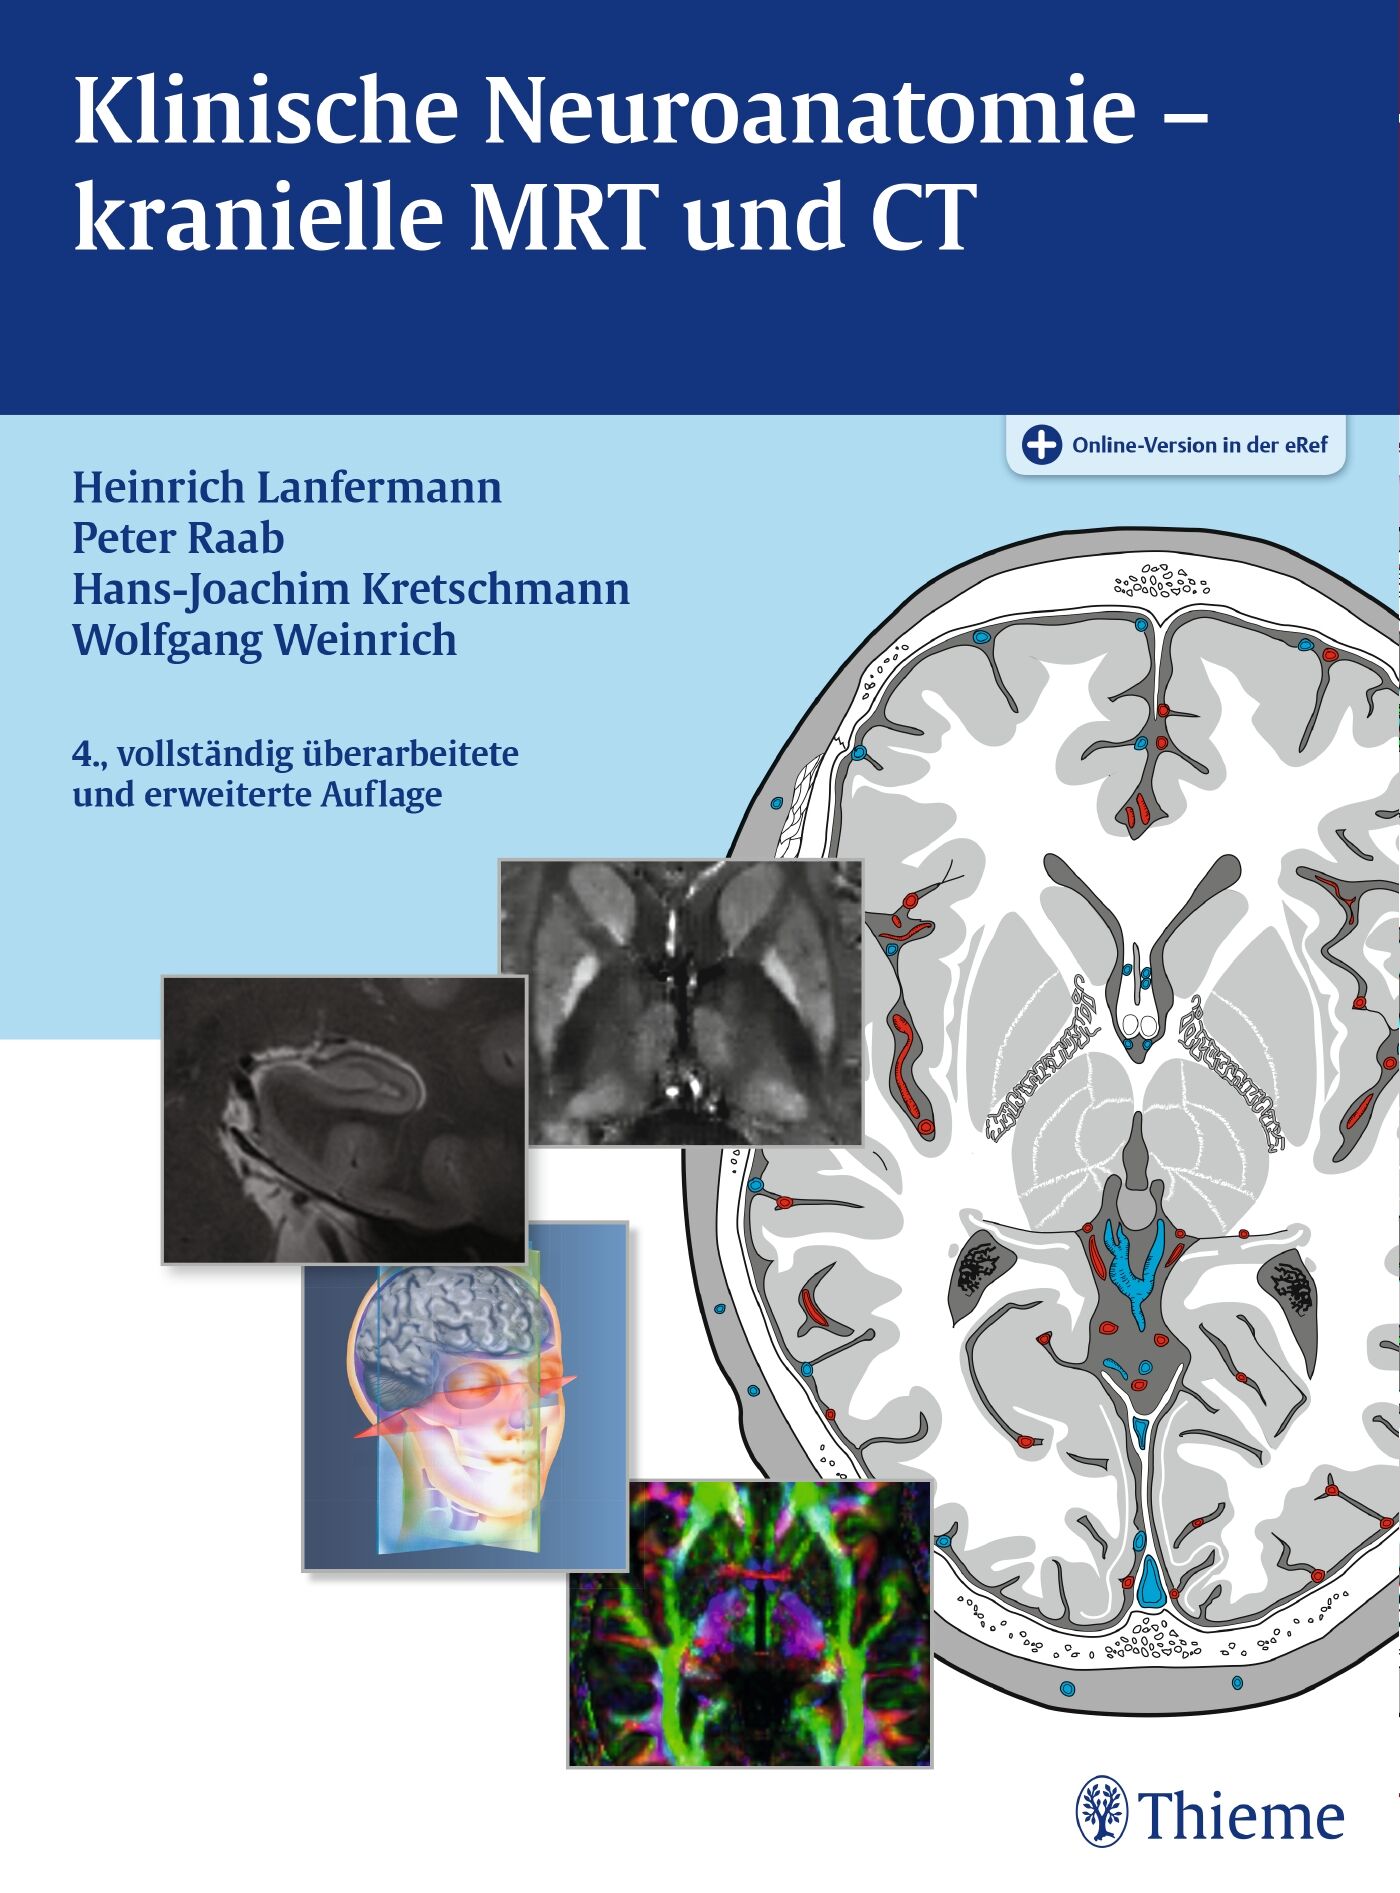 Klinische Neuroanatomie - kranielle MRT und CT, 9783136152041